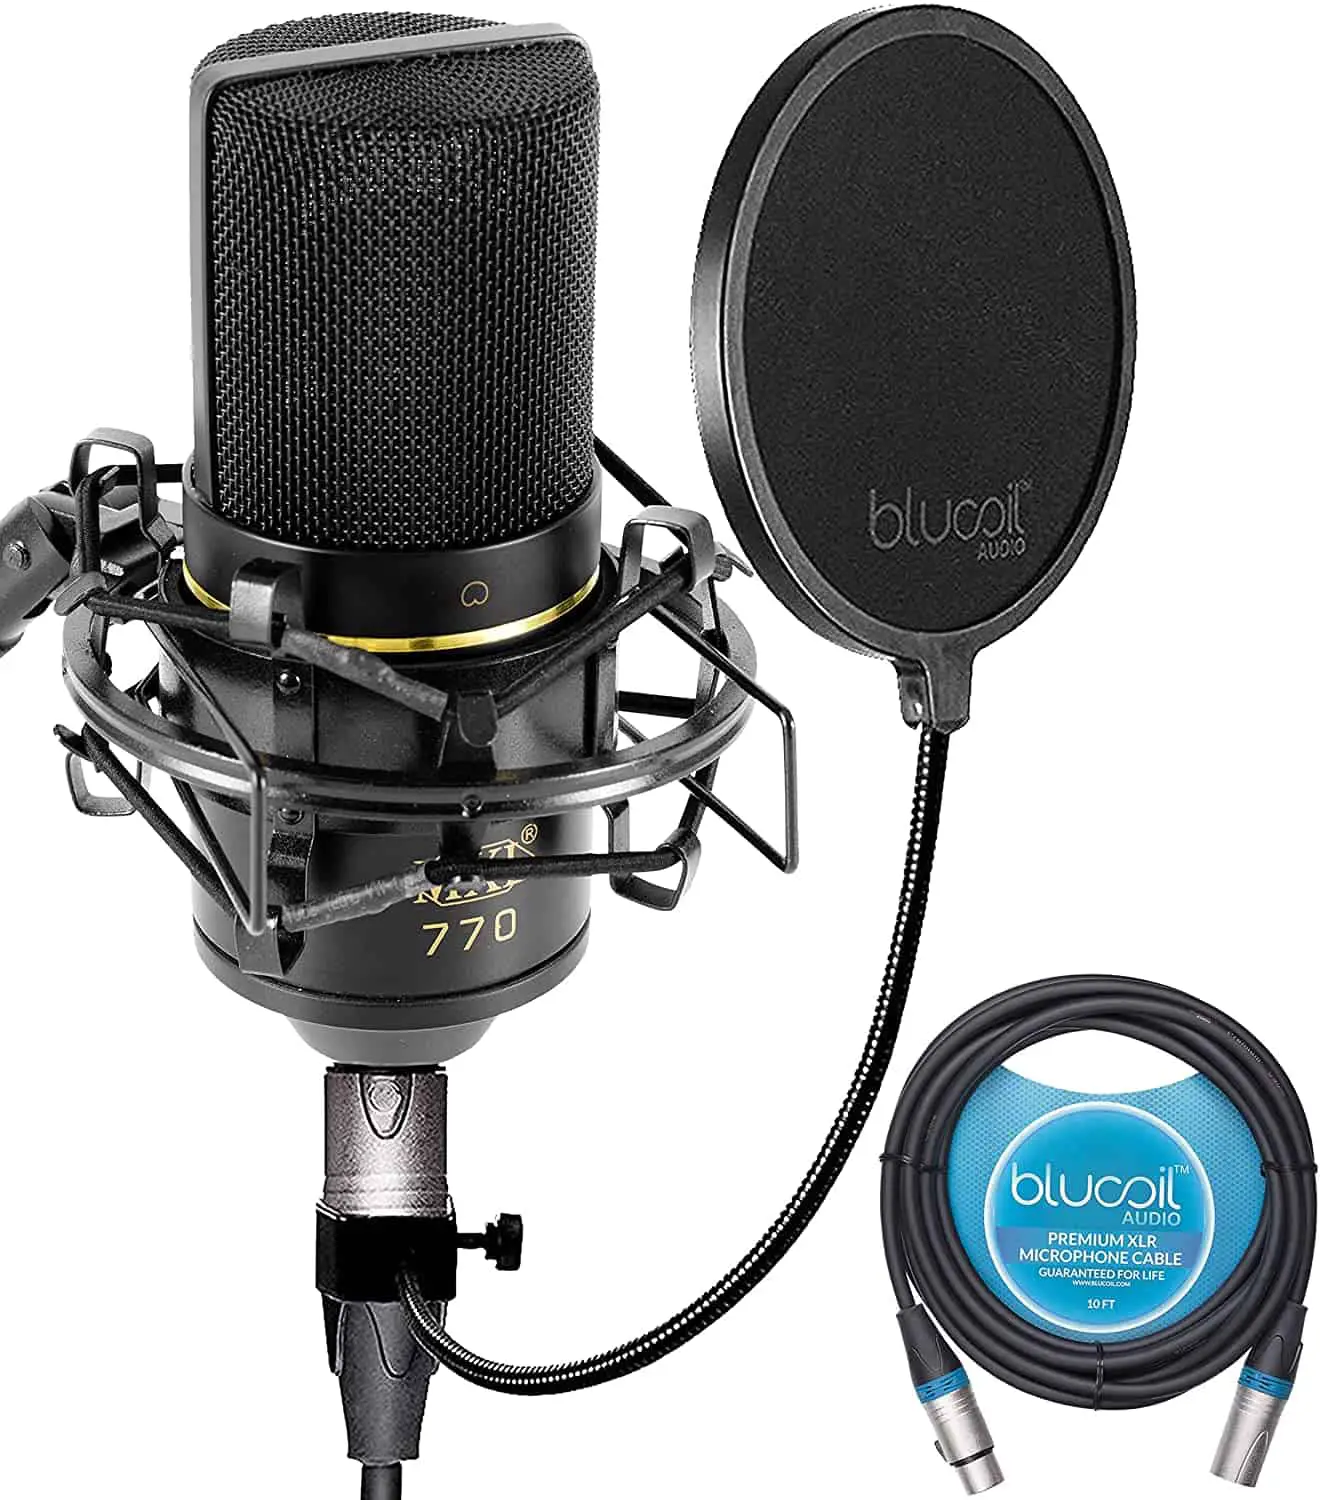 Best XLR condenser mic: Mxl 770 cardioid